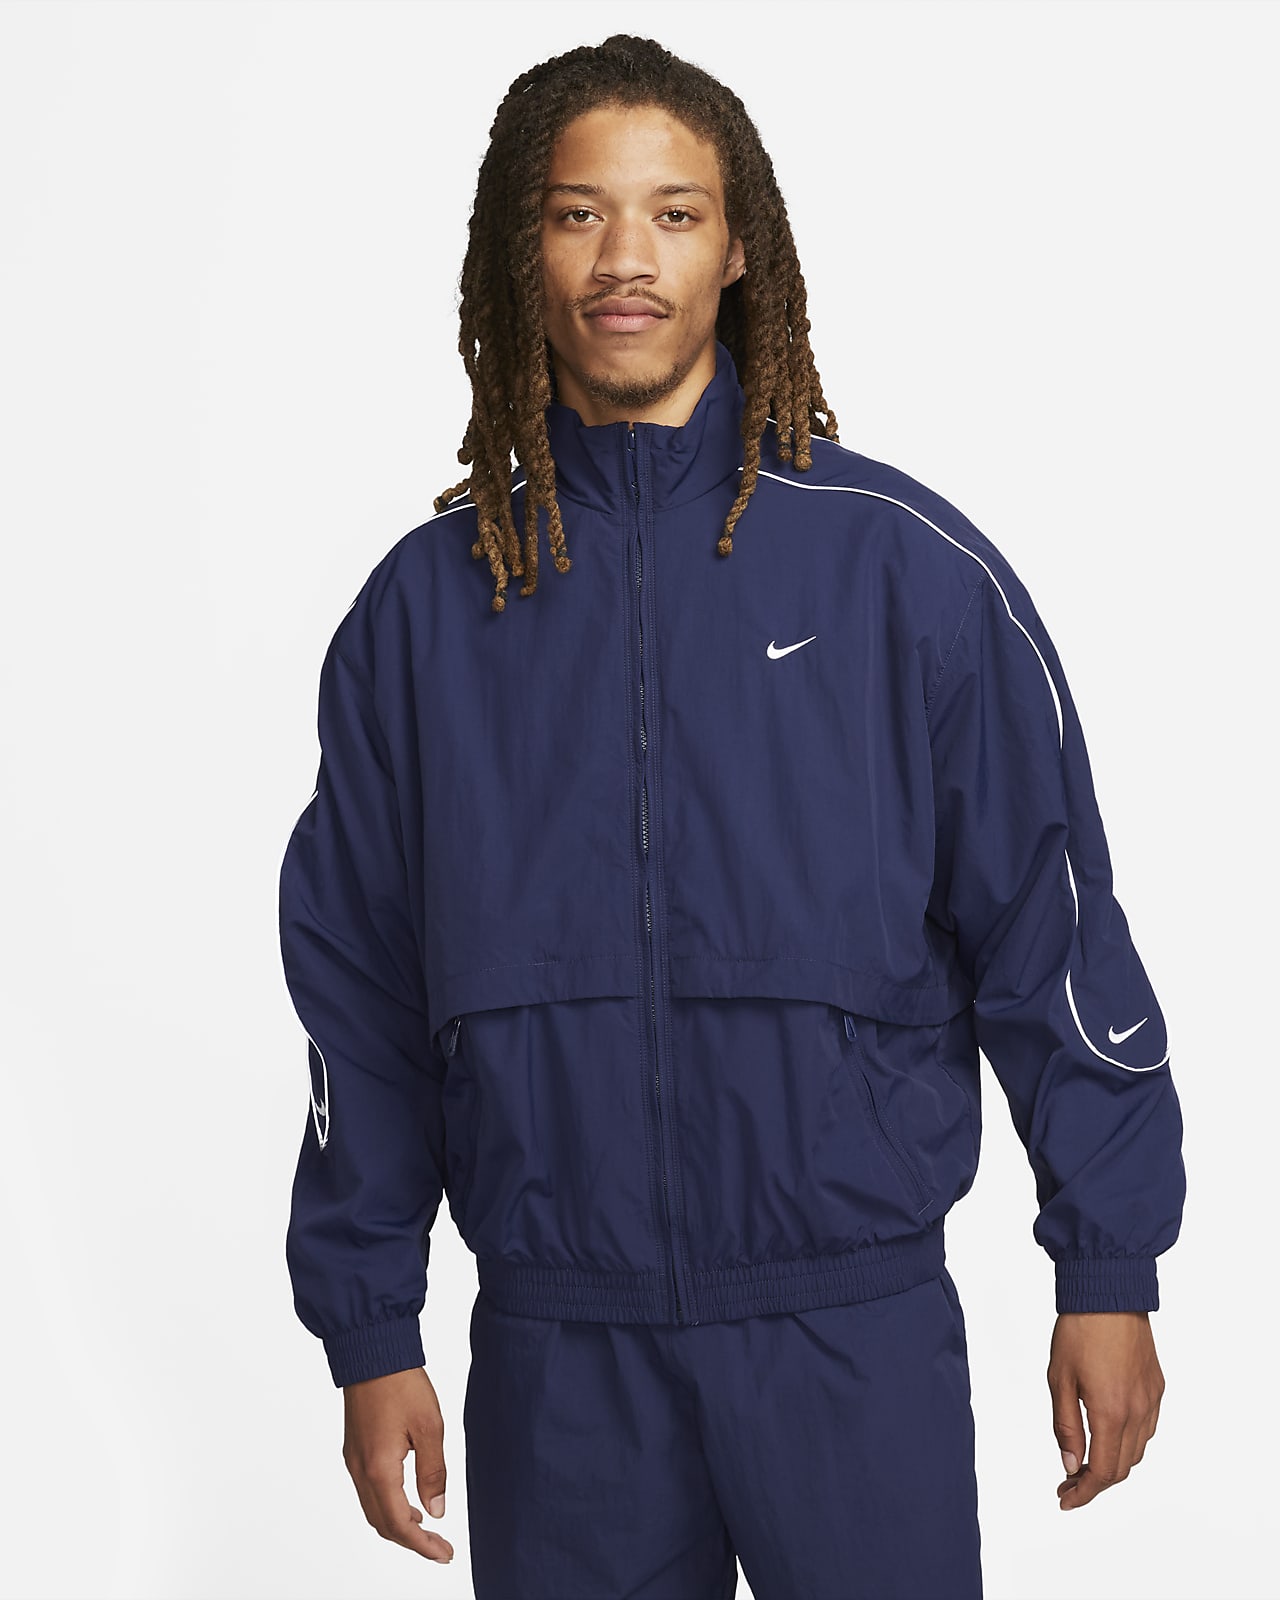 weerstand bieden Verbieden Tom Audreath Nike Sportswear Solo Swoosh Men's Woven Tracksuit Jacket. Nike LU